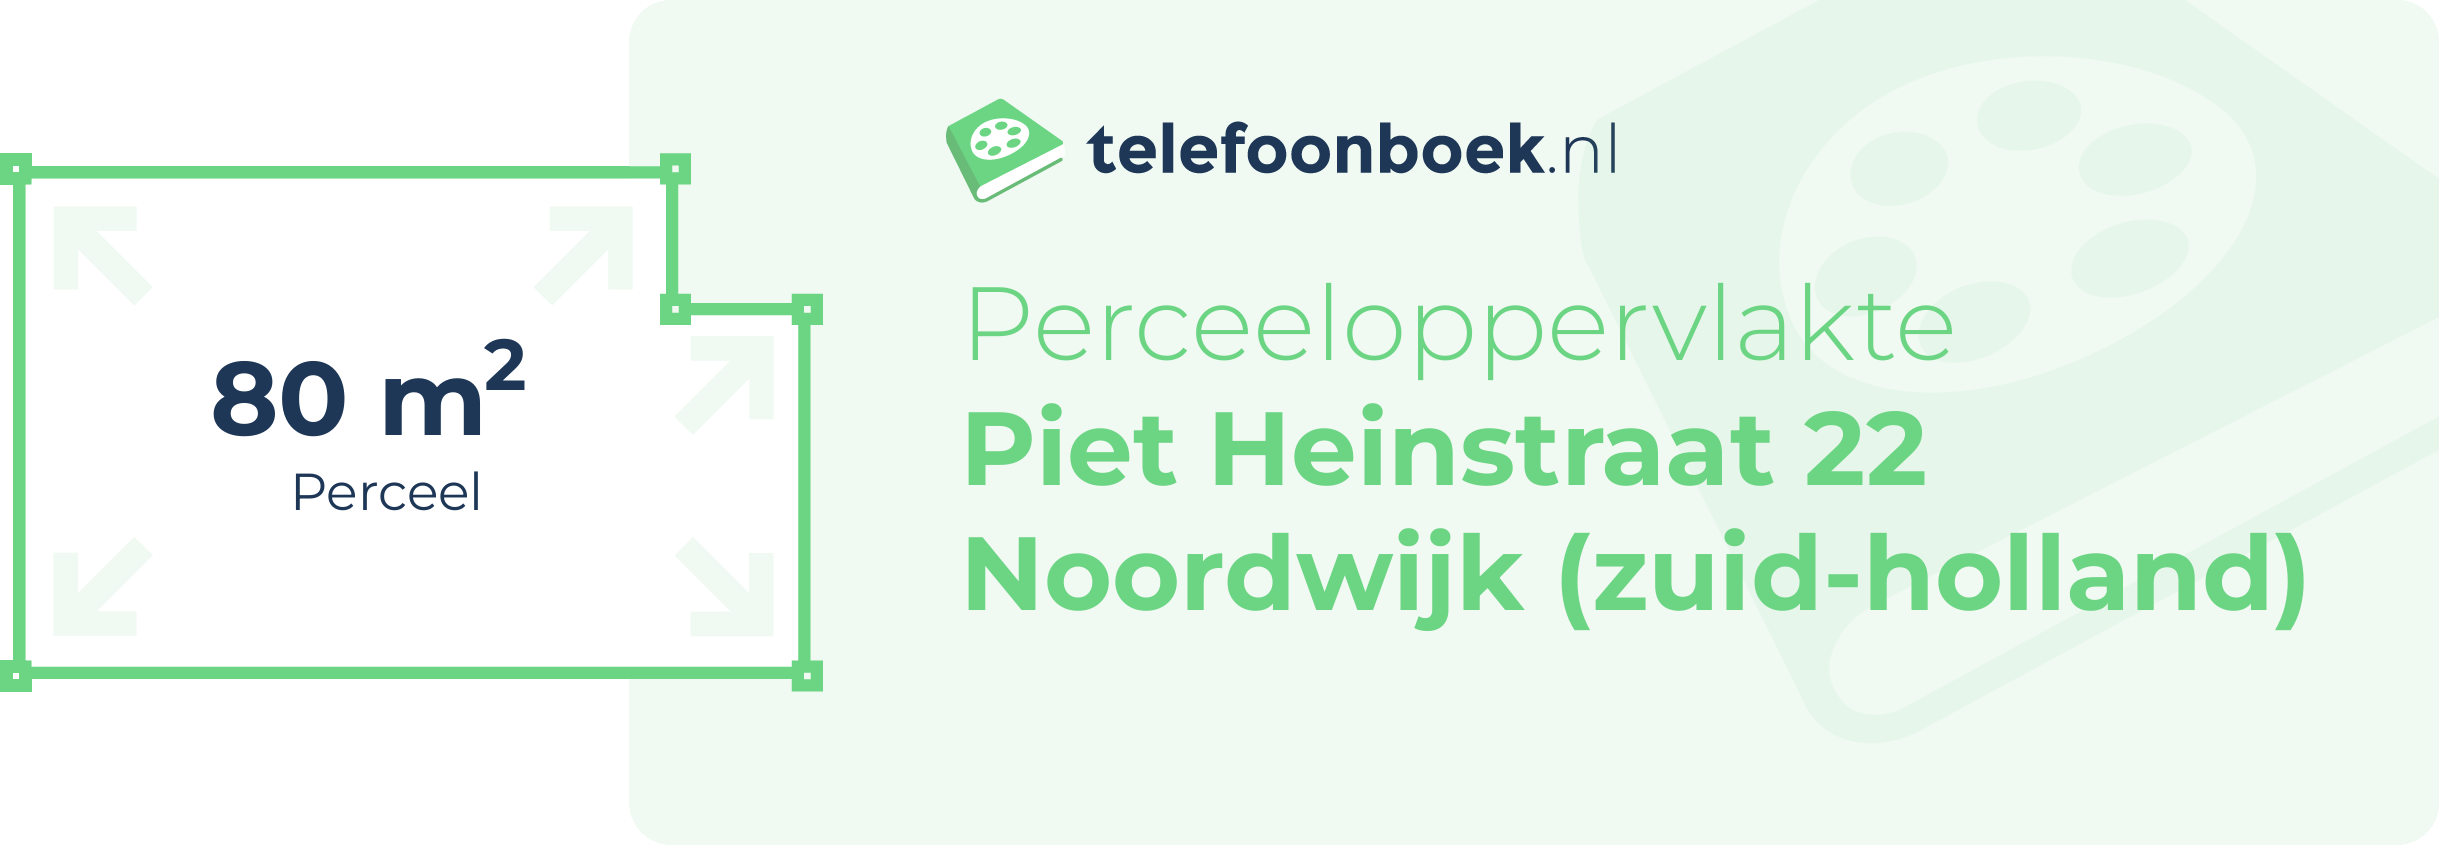 Perceeloppervlakte Piet Heinstraat 22 Noordwijk (Zuid-Holland)